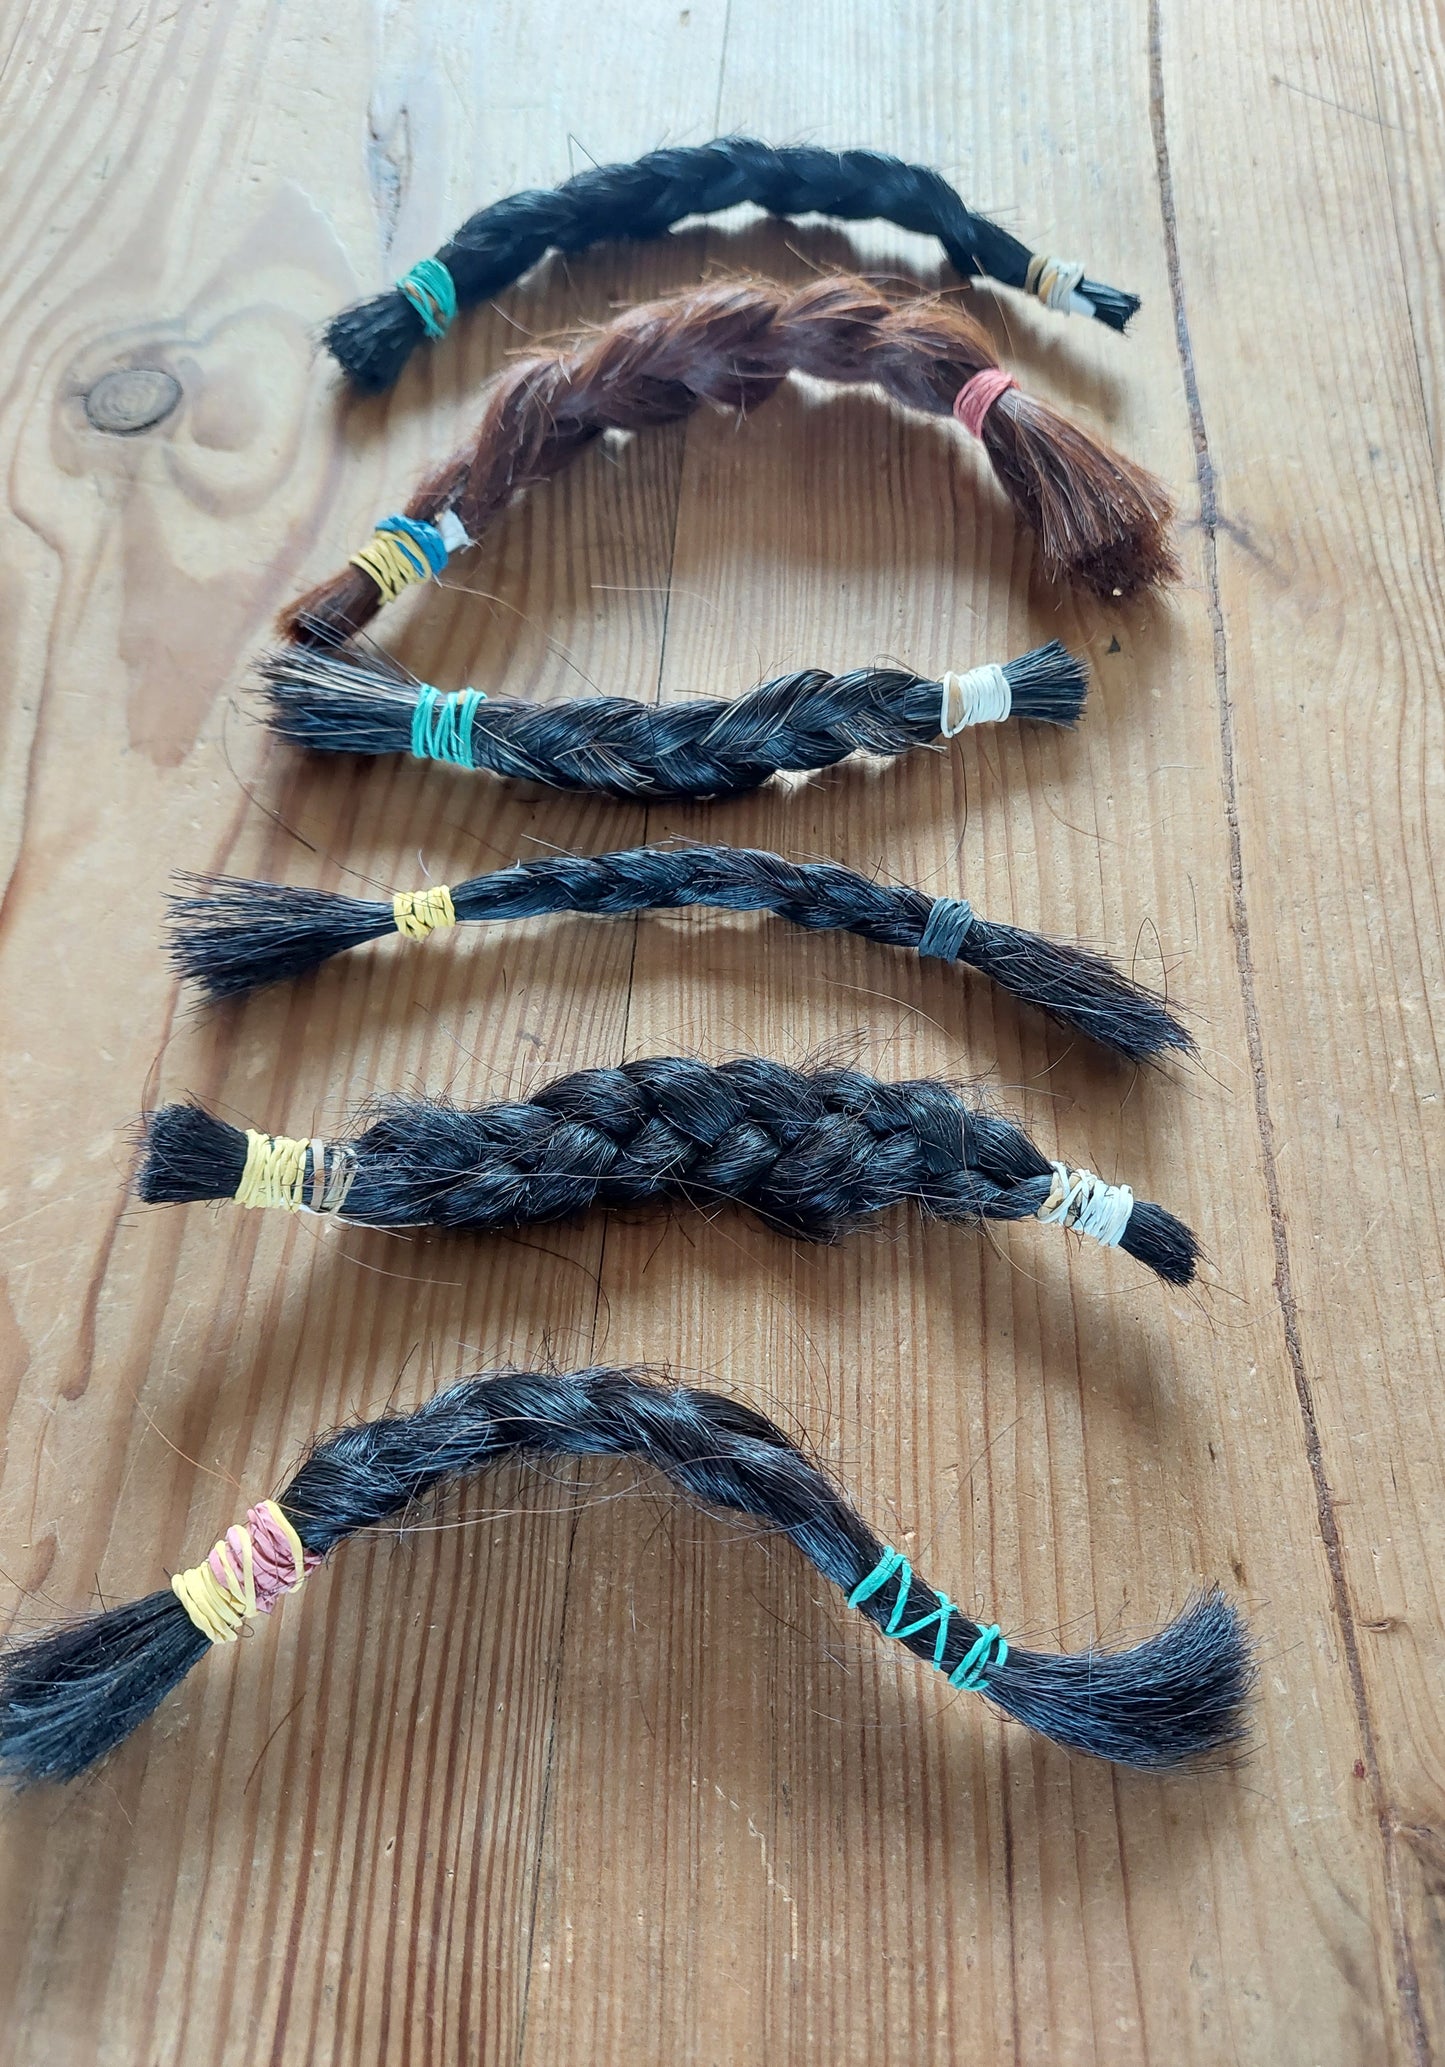 Horse mane hair braids